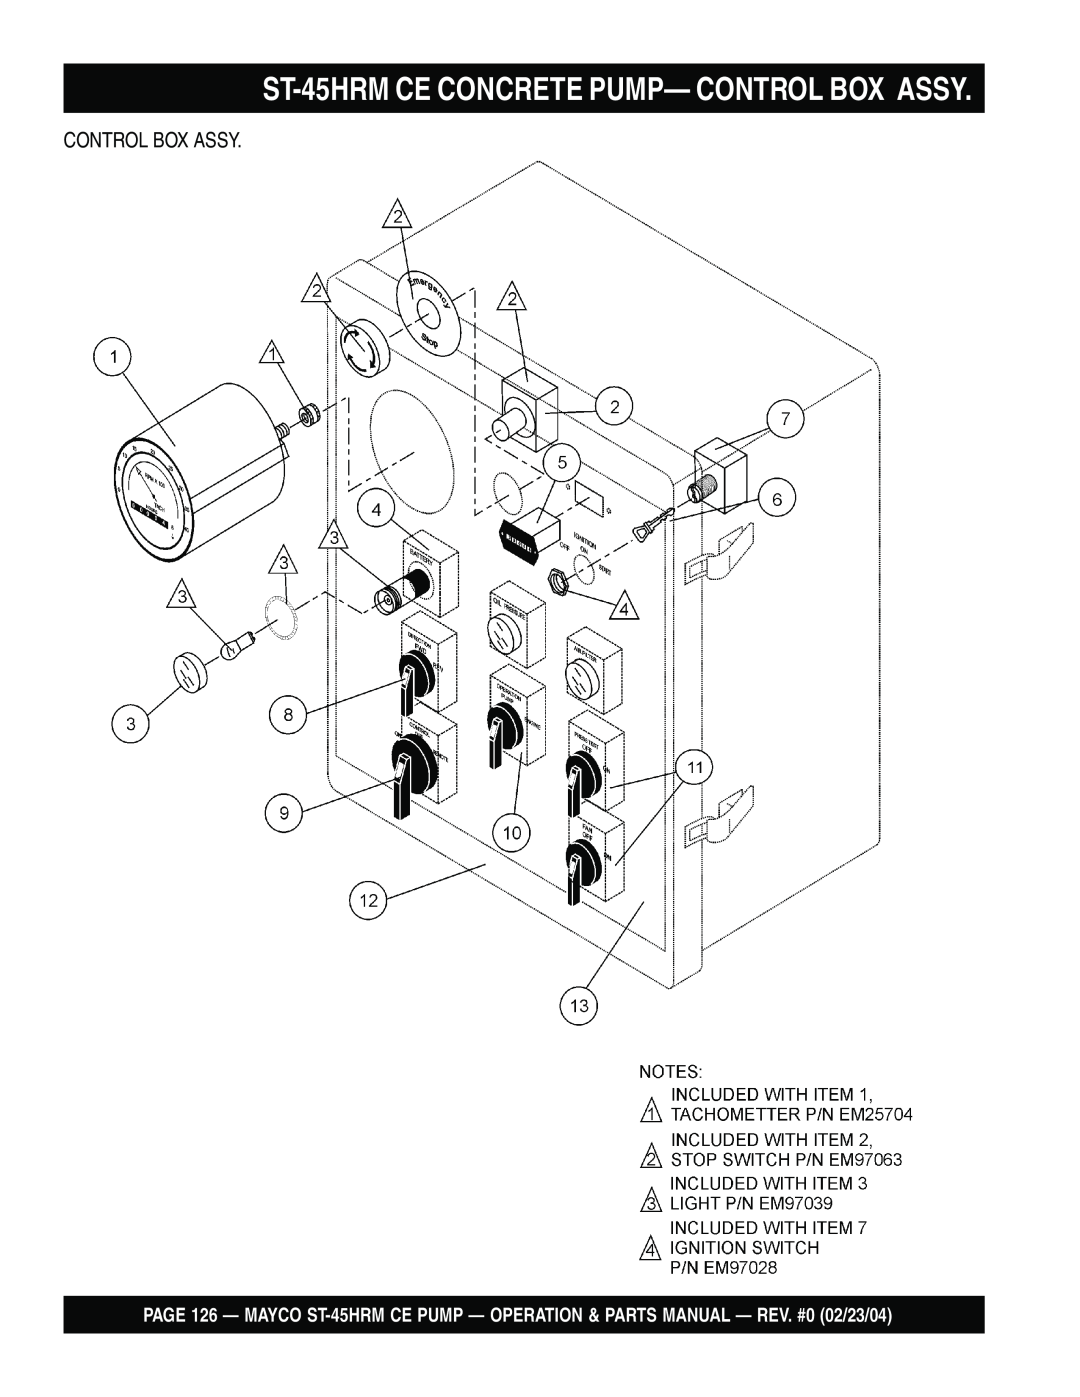 Multiquip ST-45HRM CE manual ST-45HRMCE CONCRETE PUMP— CONTROL BOX ASSY, Control Box Assy 